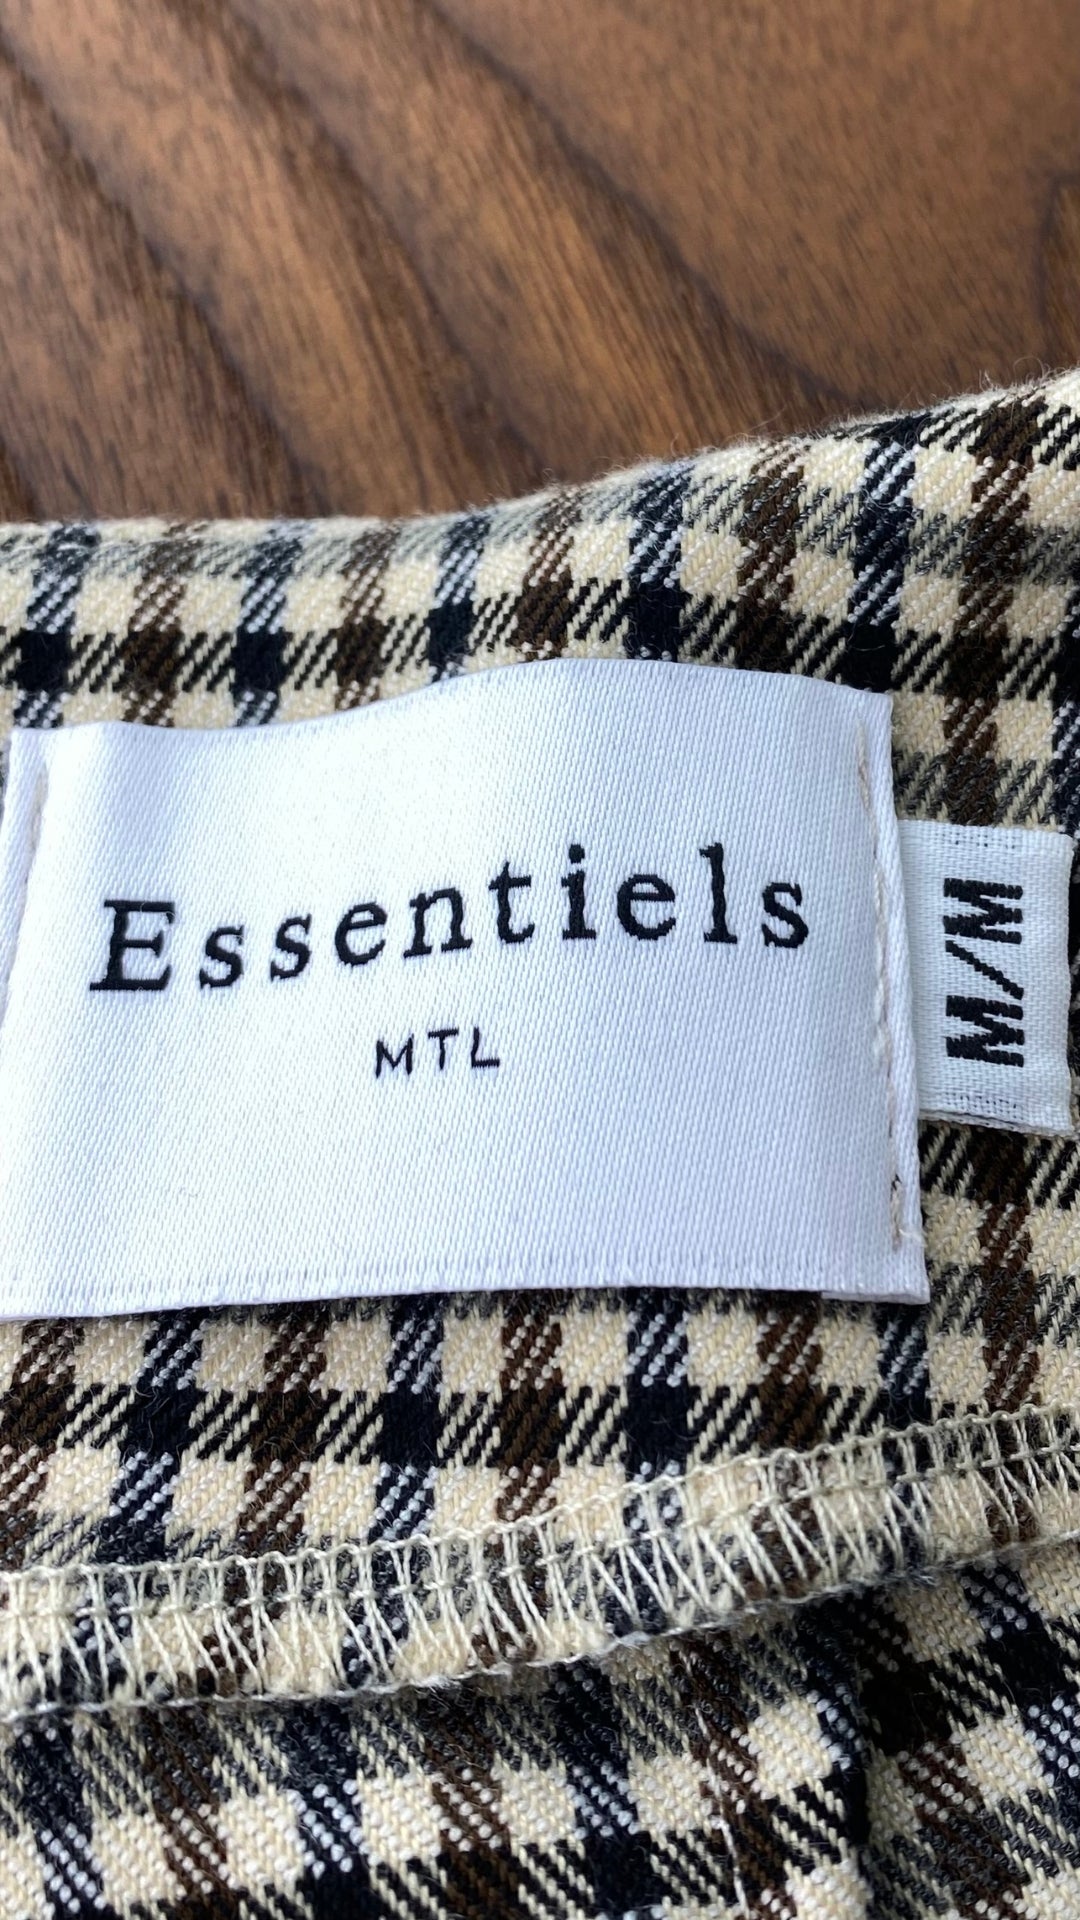 Pantalon pied de poule automnal, marque Essentiels Co Mtl, taille medium (petit). Vue de l'étiquette de marque et taille.